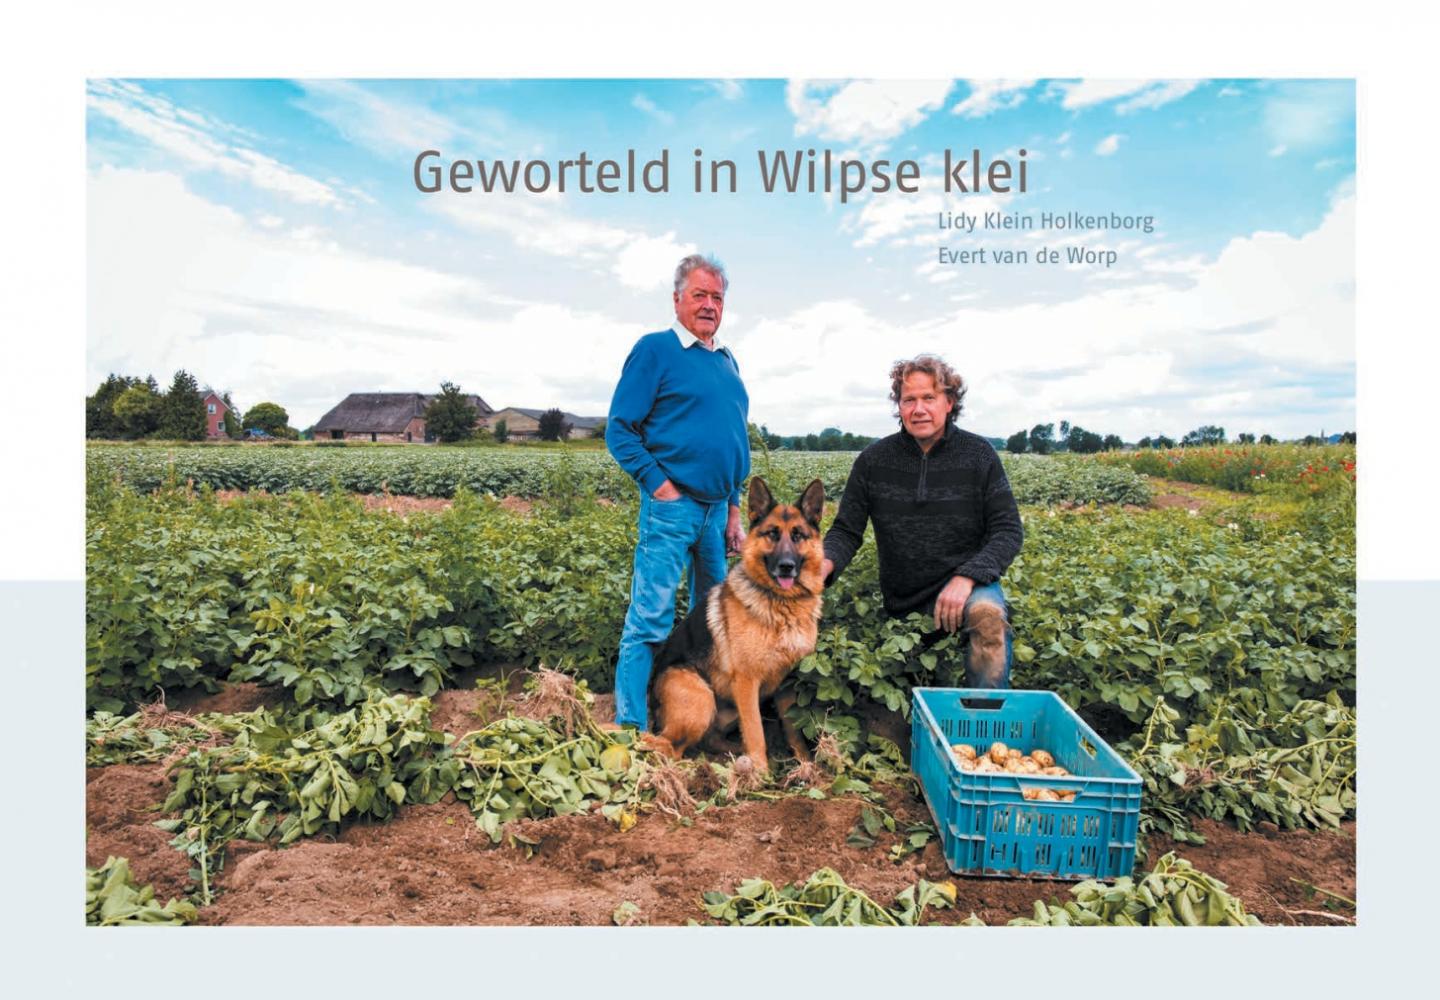 Klein Holkenborg, Lidy en Evert van de Worp - Geworteld in Wilpse klei